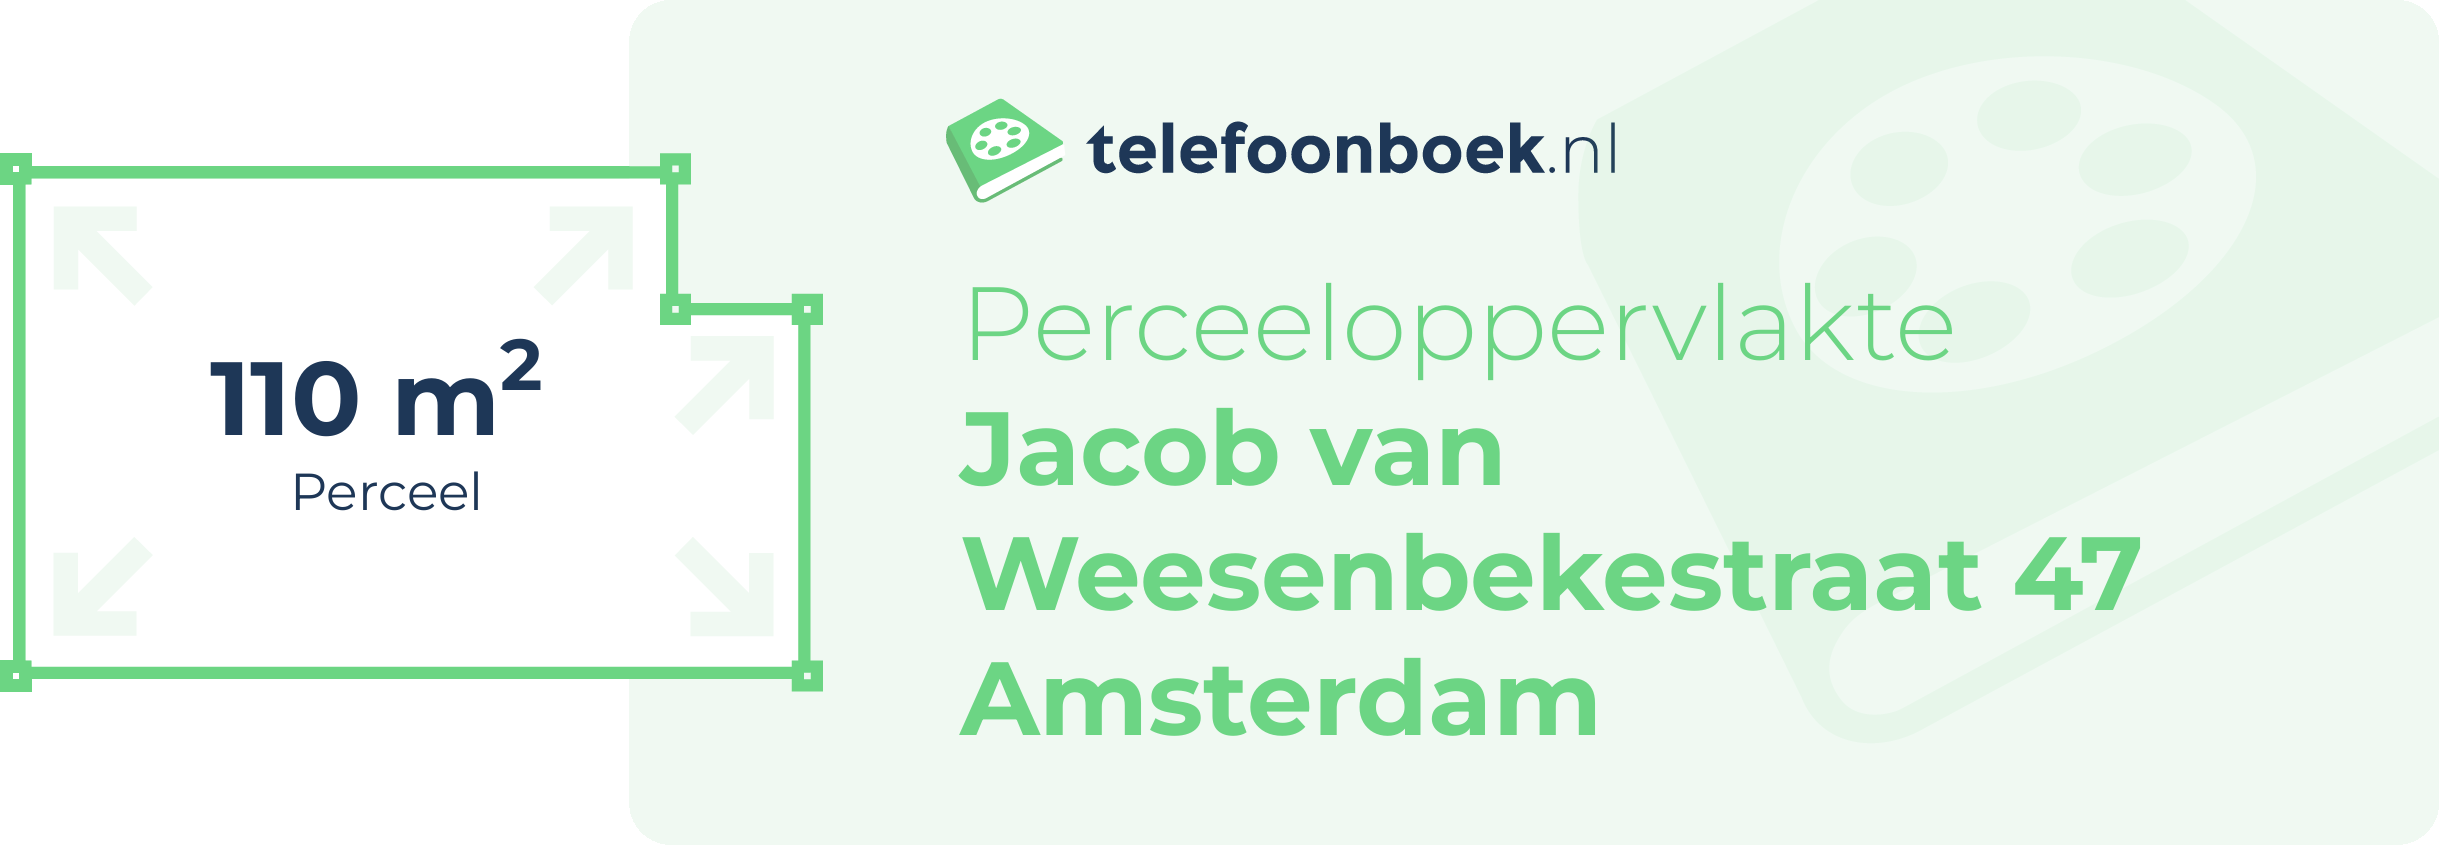 Perceeloppervlakte Jacob Van Weesenbekestraat 47 Amsterdam